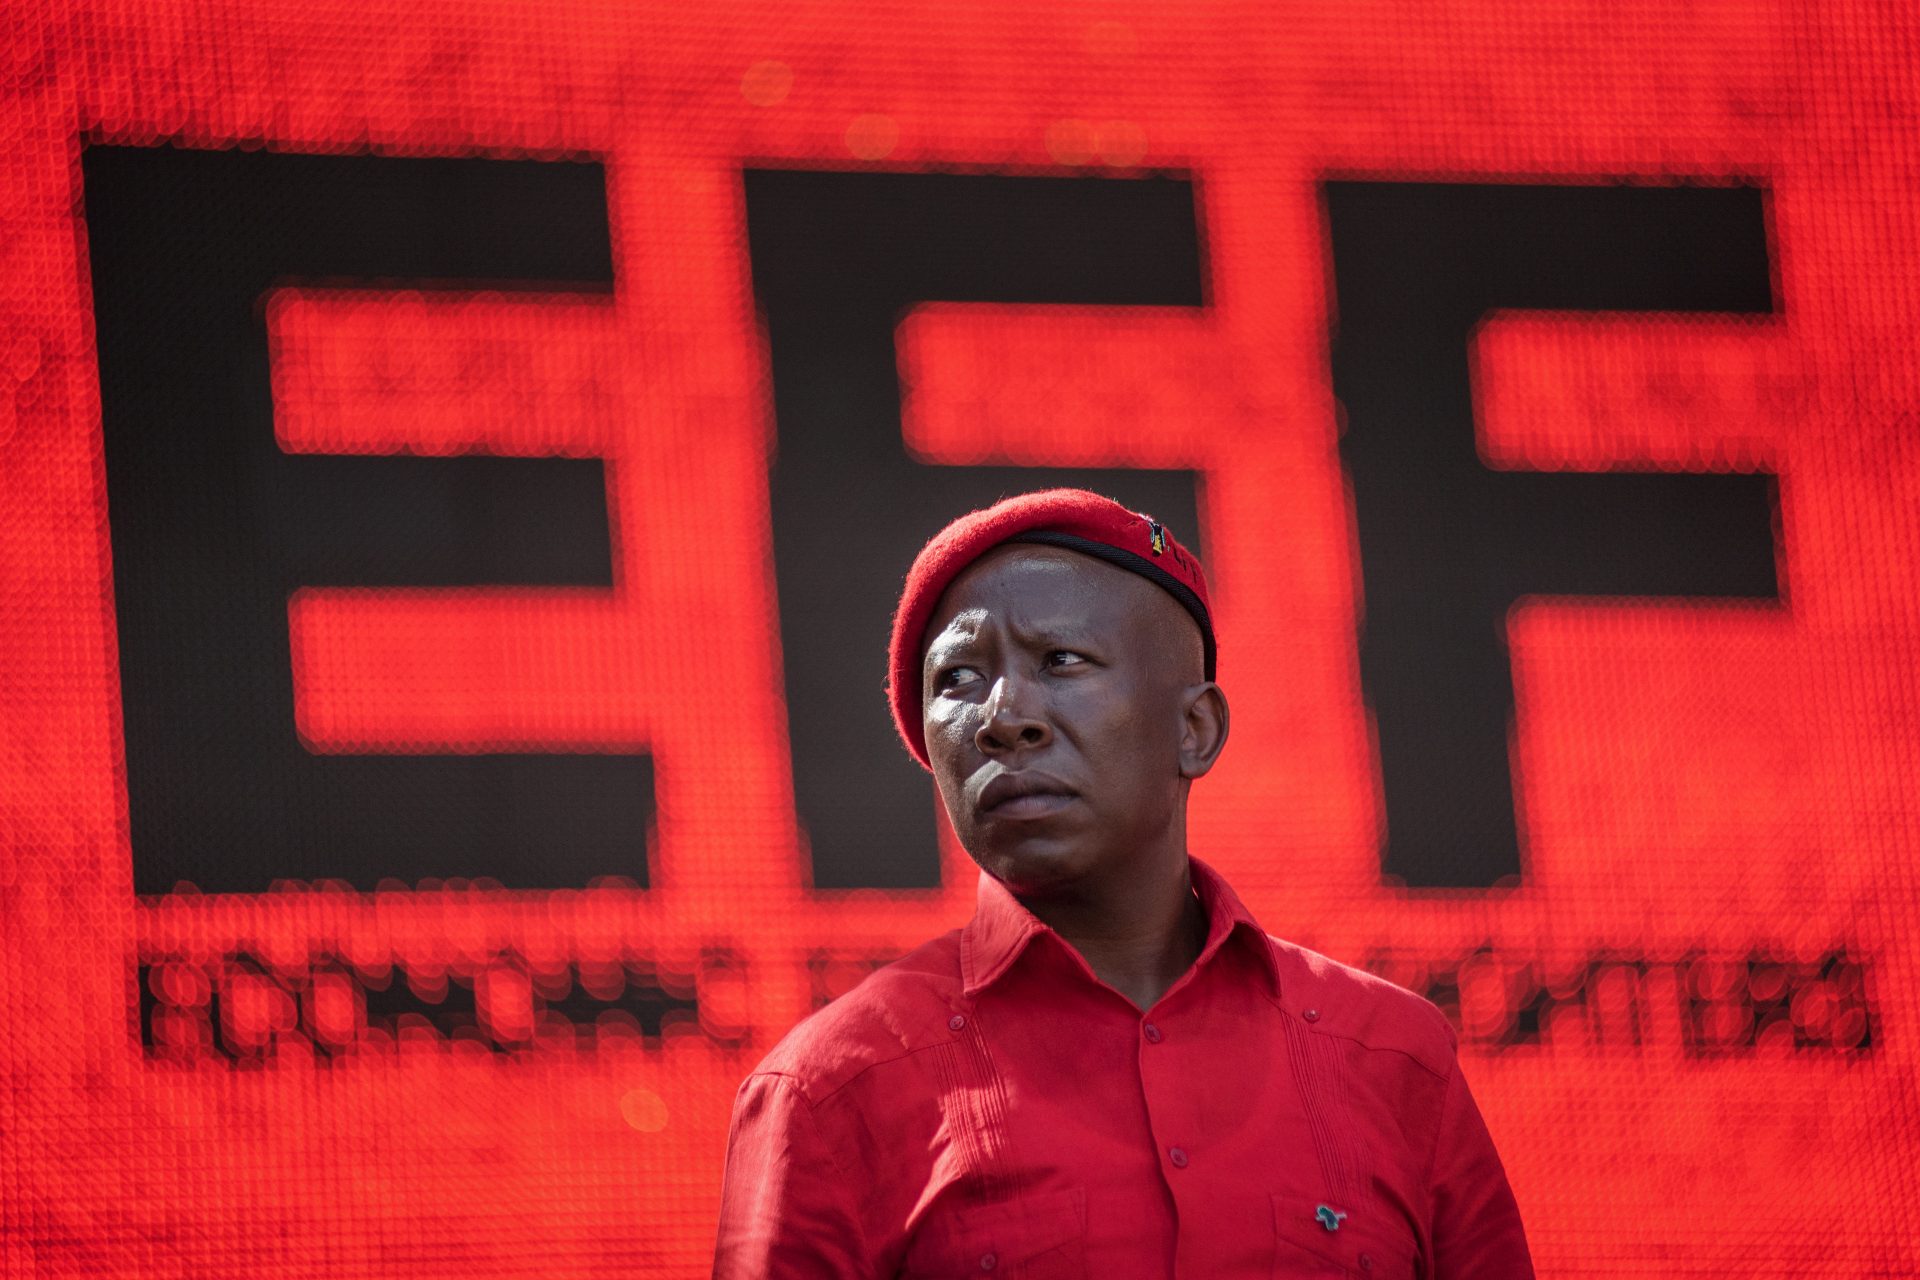 El partido radical de izquierdas: Economic Freedom Fighters (EFF)